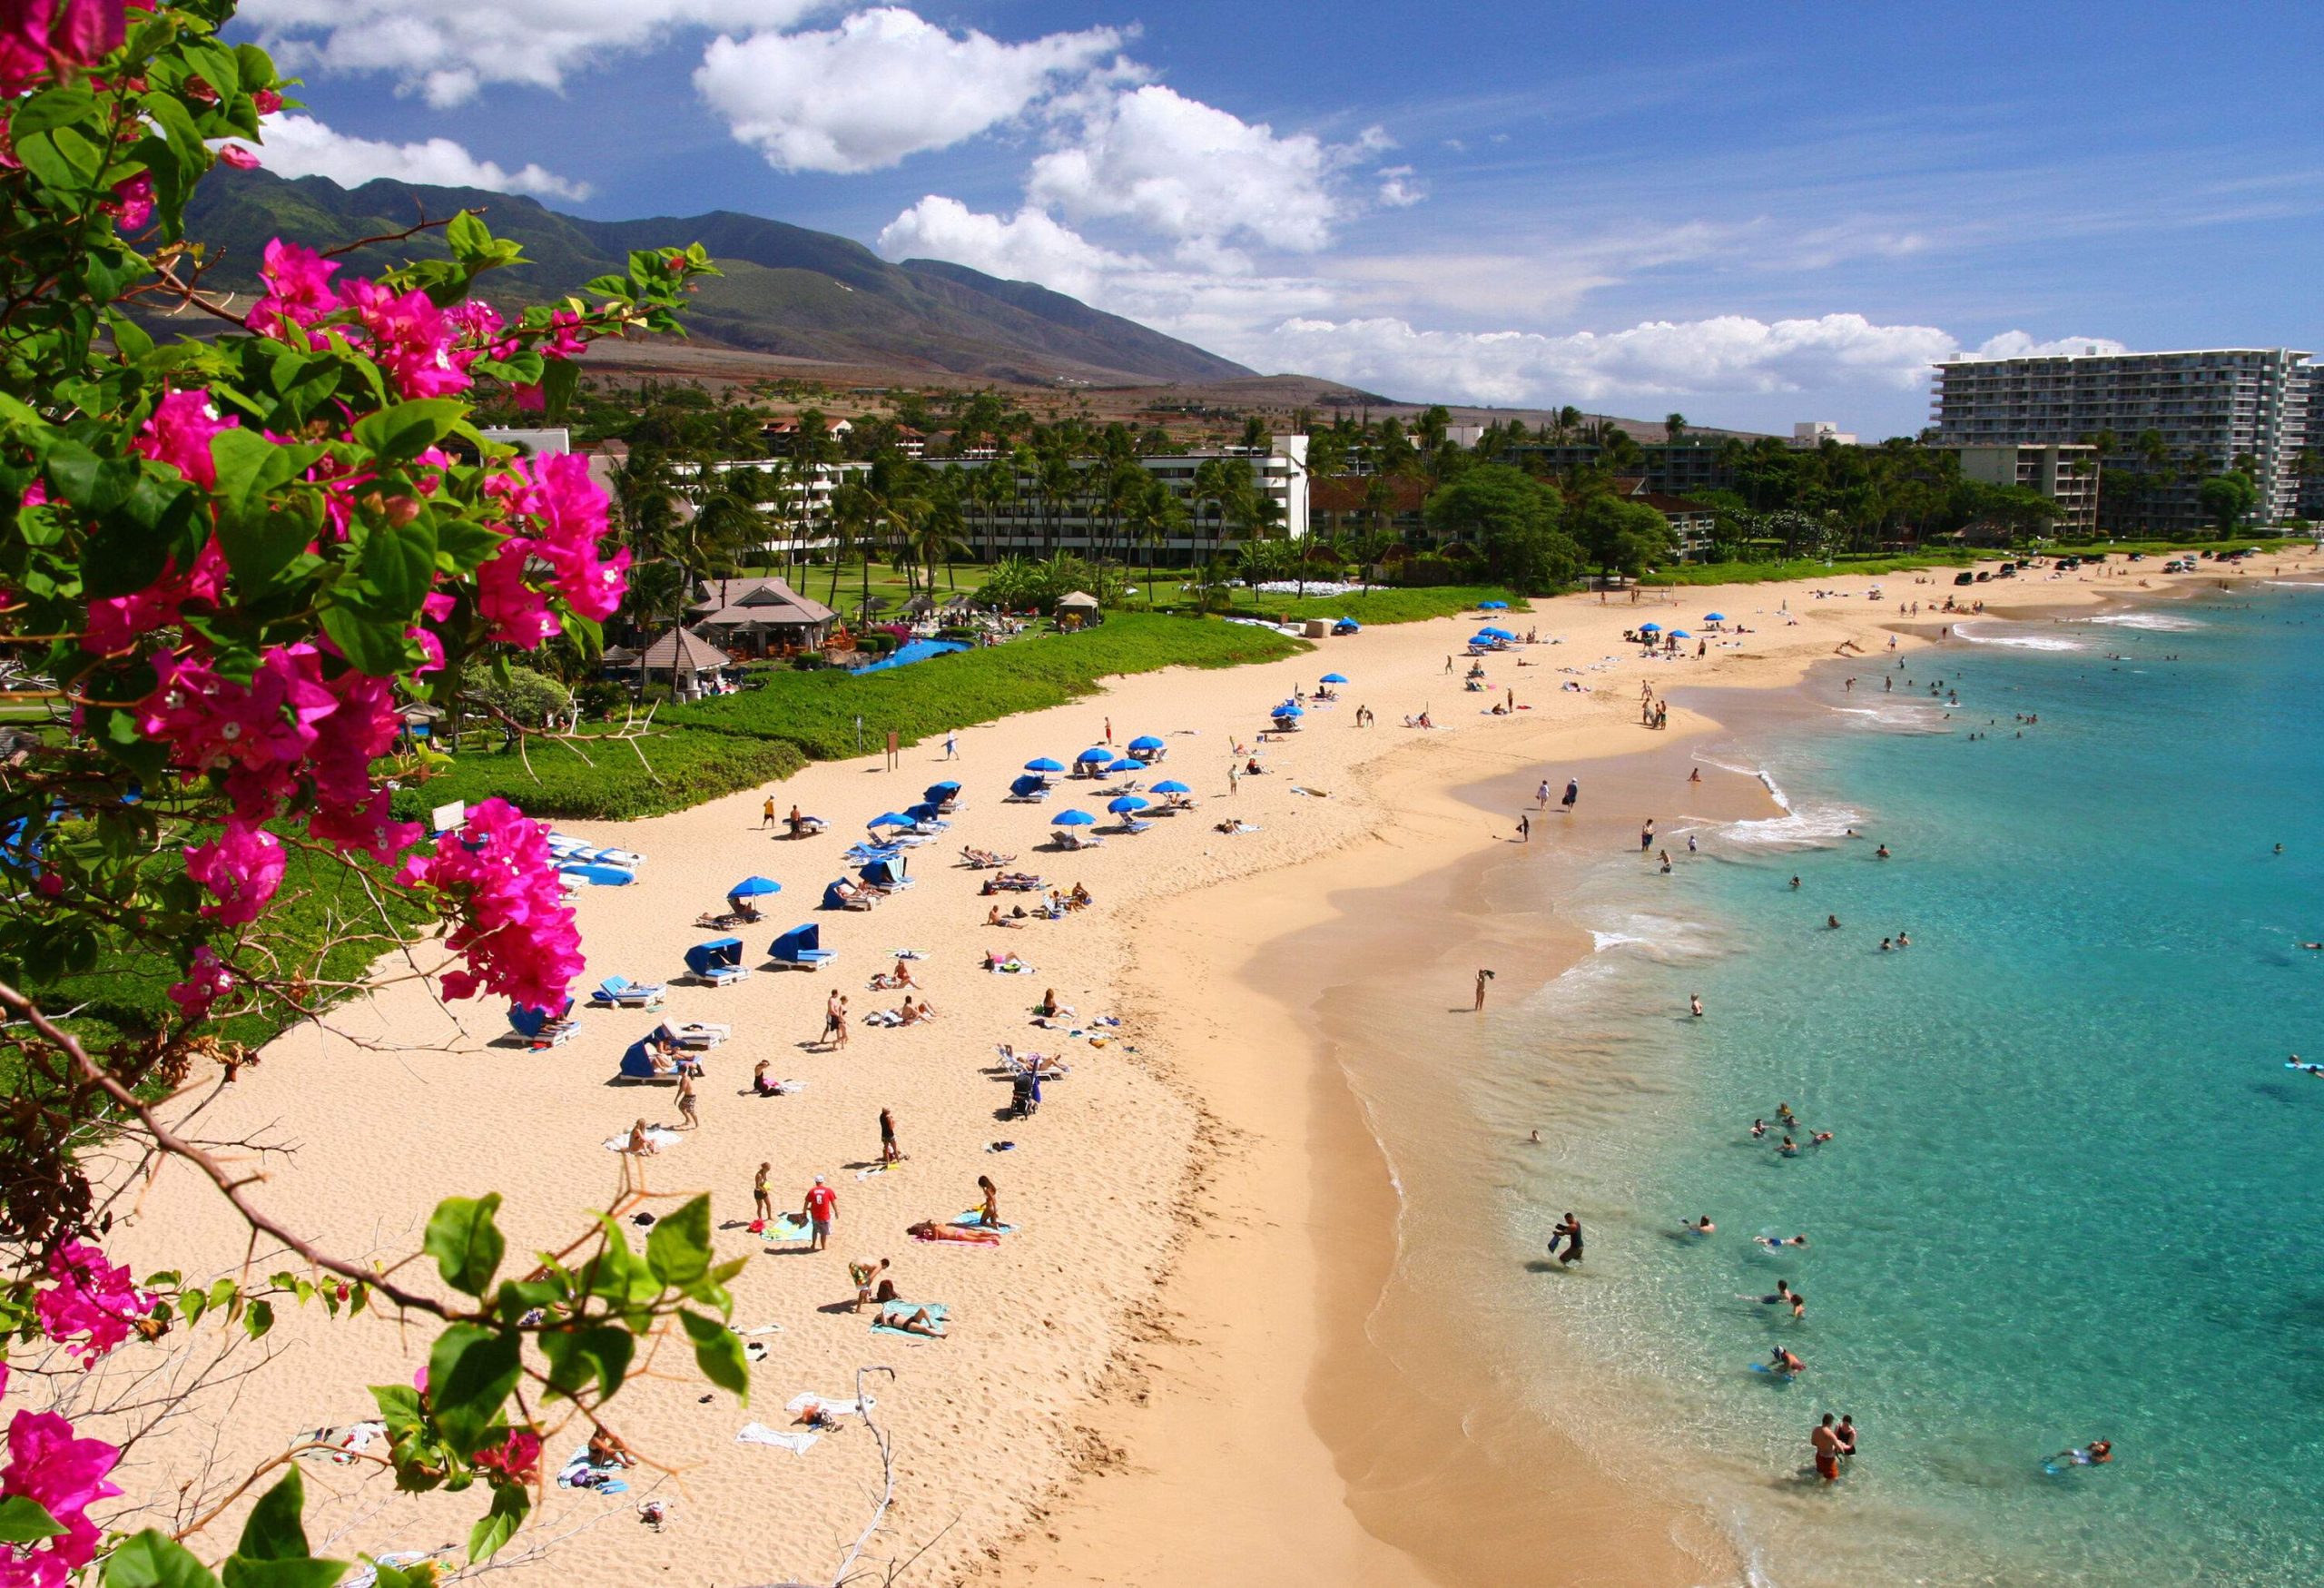 Its beach beach beach. Каанапали Мауи Гавайи. Пляж Каанапали - Мауи. Гавайи пляжи Мауи. Maui остров Гавайи.